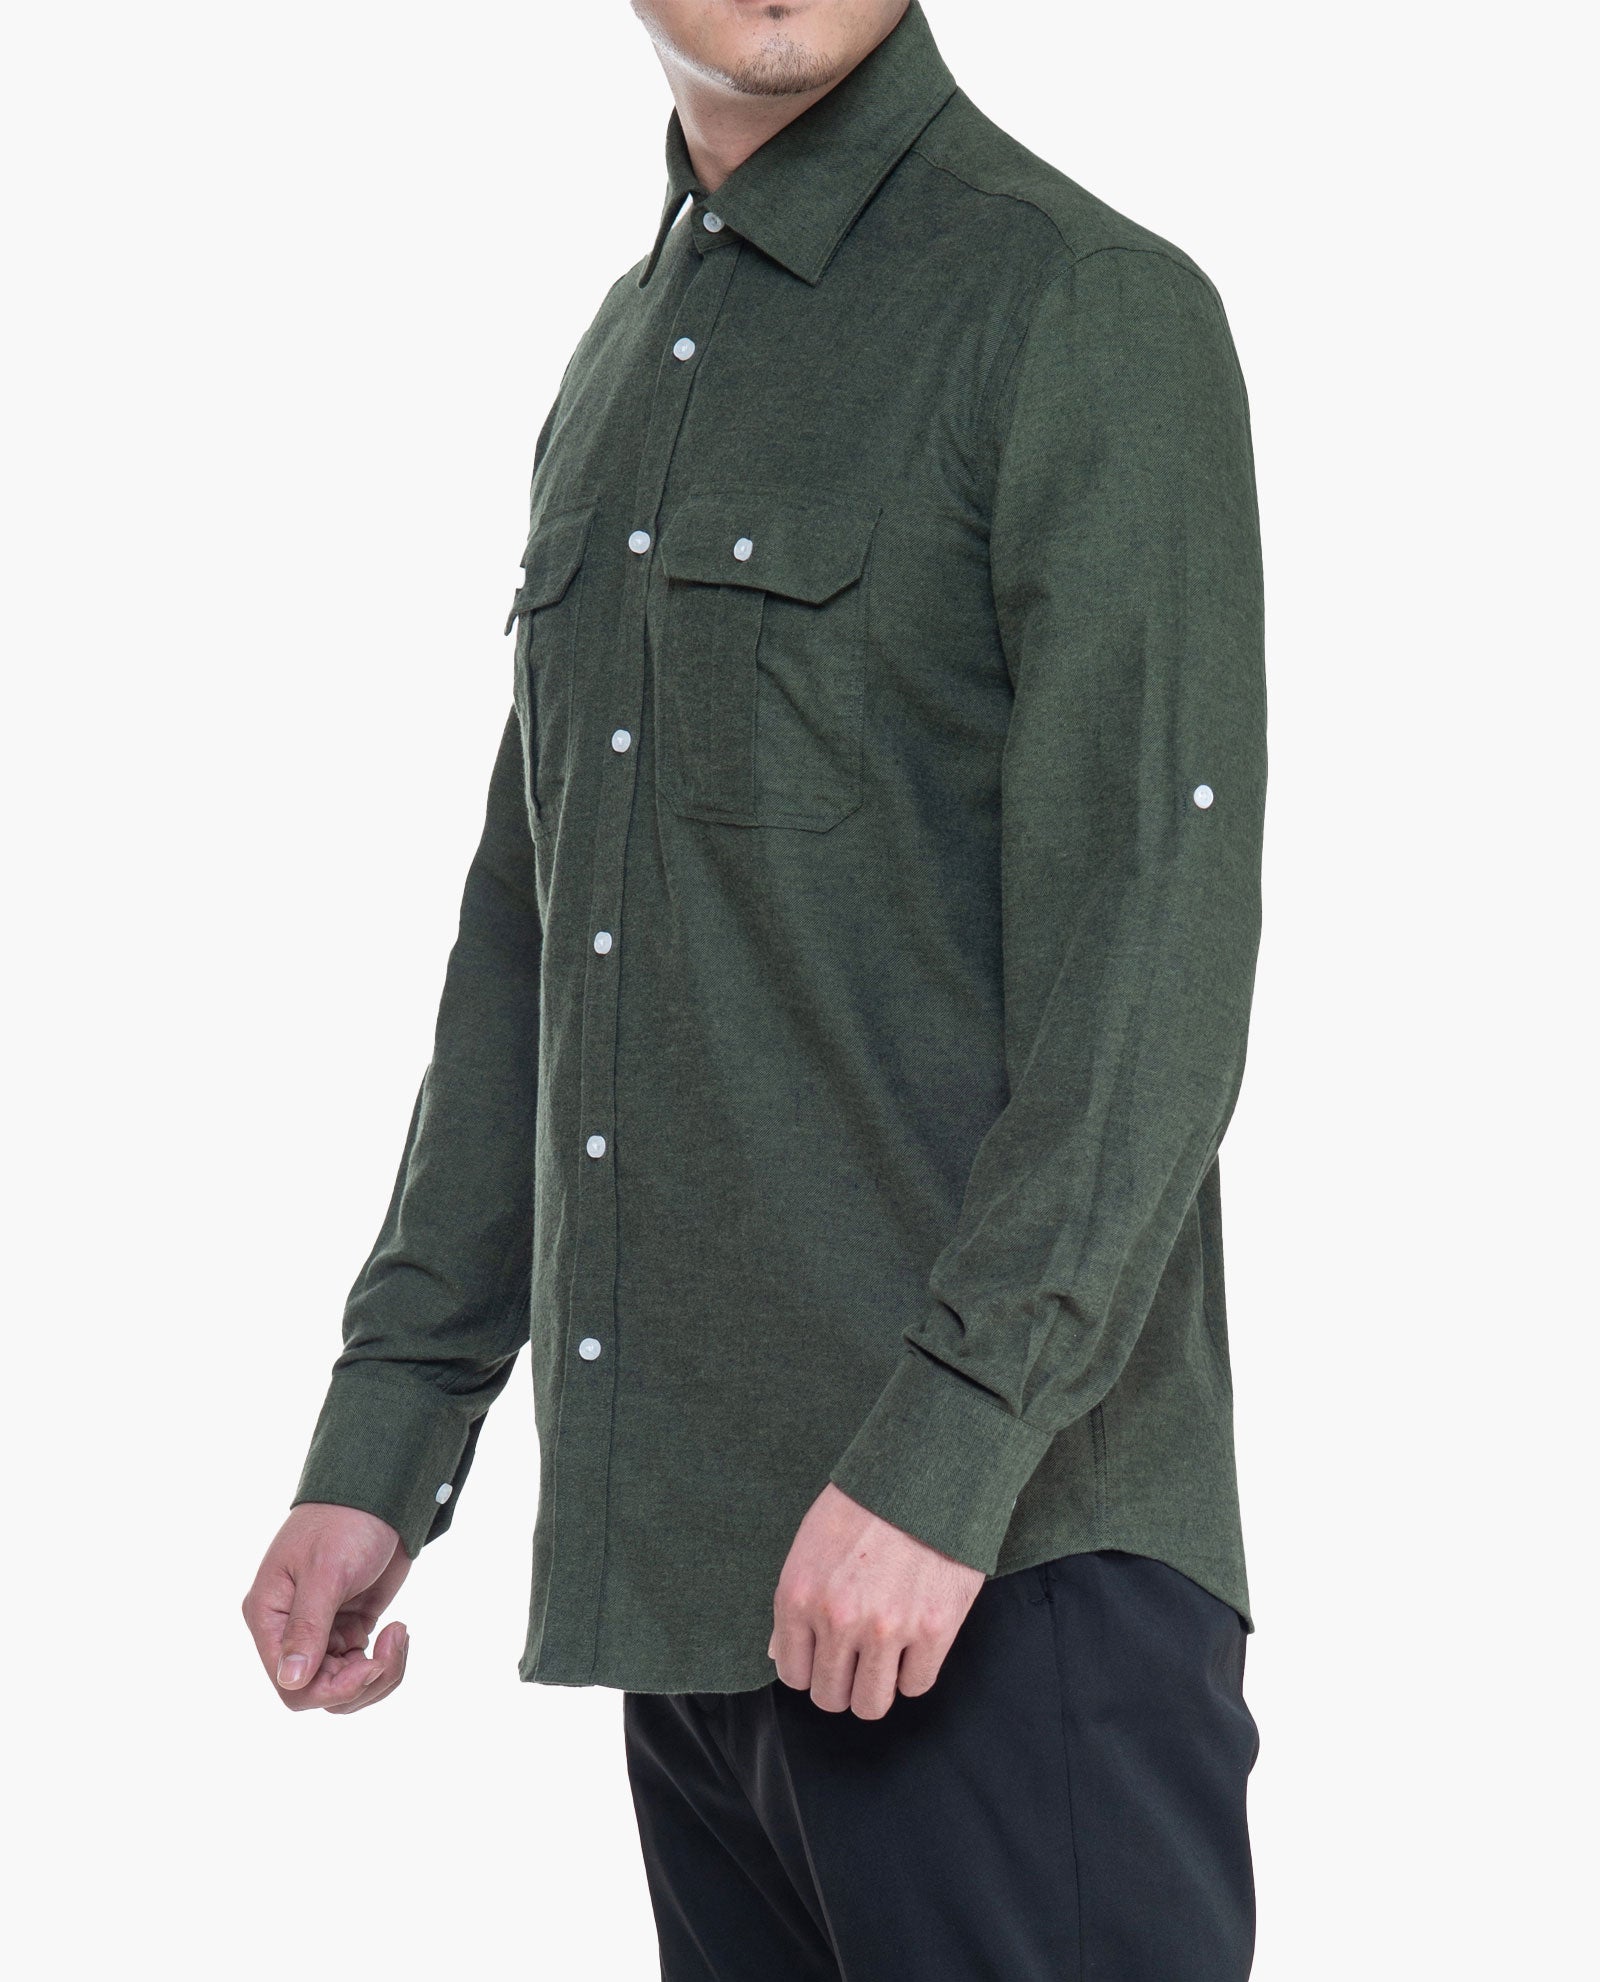 Green Flannel Sport Shirt